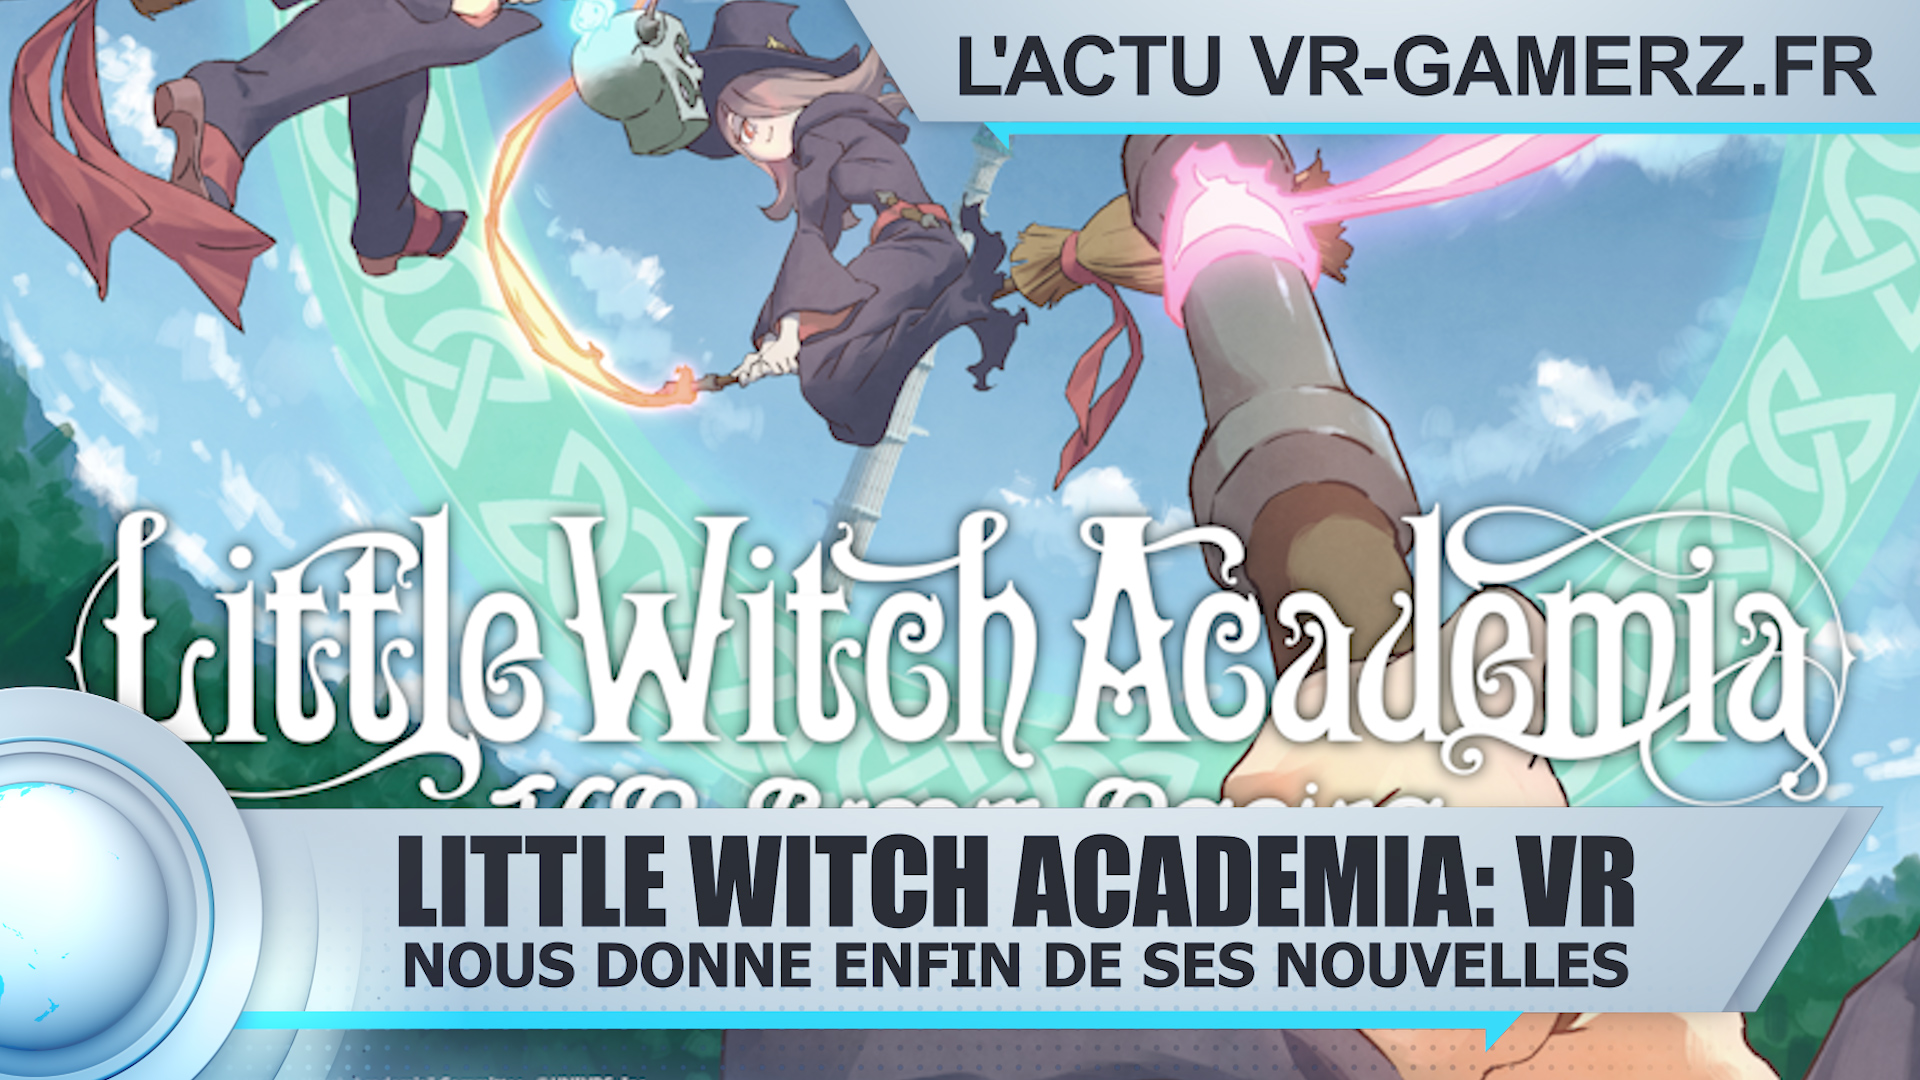 Little Witch Academia VR Broom Racing nous donne enfin des nouvelles